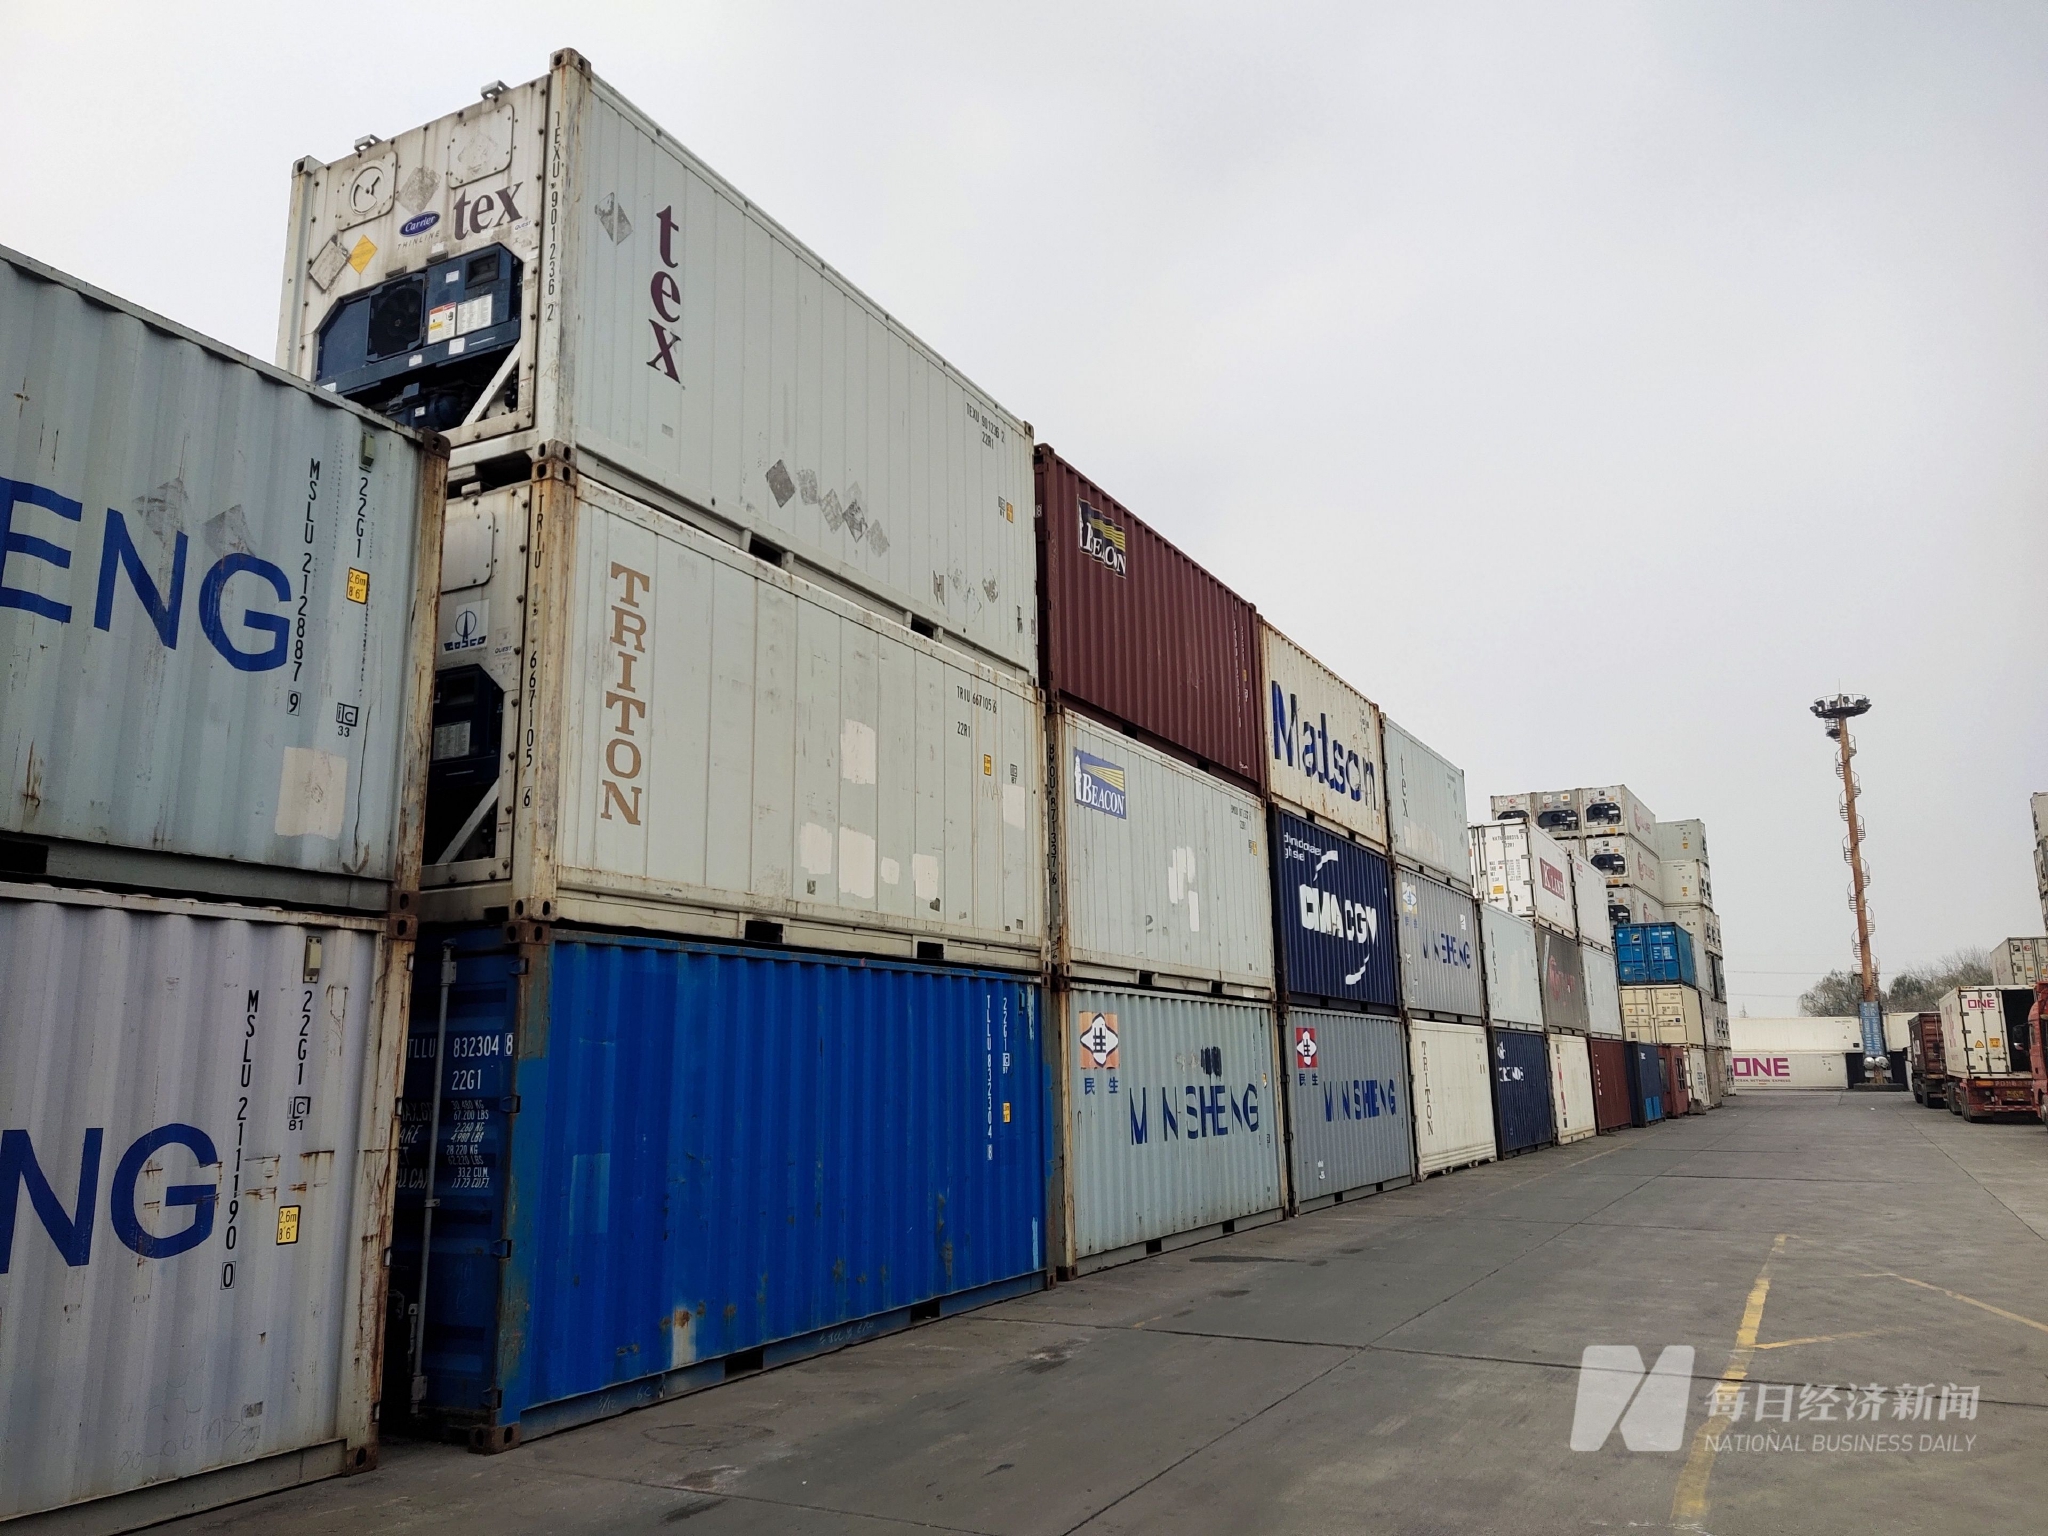 imtoken安卓版下载app|全球集装箱溢出流入中国：有码头空箱堆存量占比超90%，如何消耗过剩箱量？